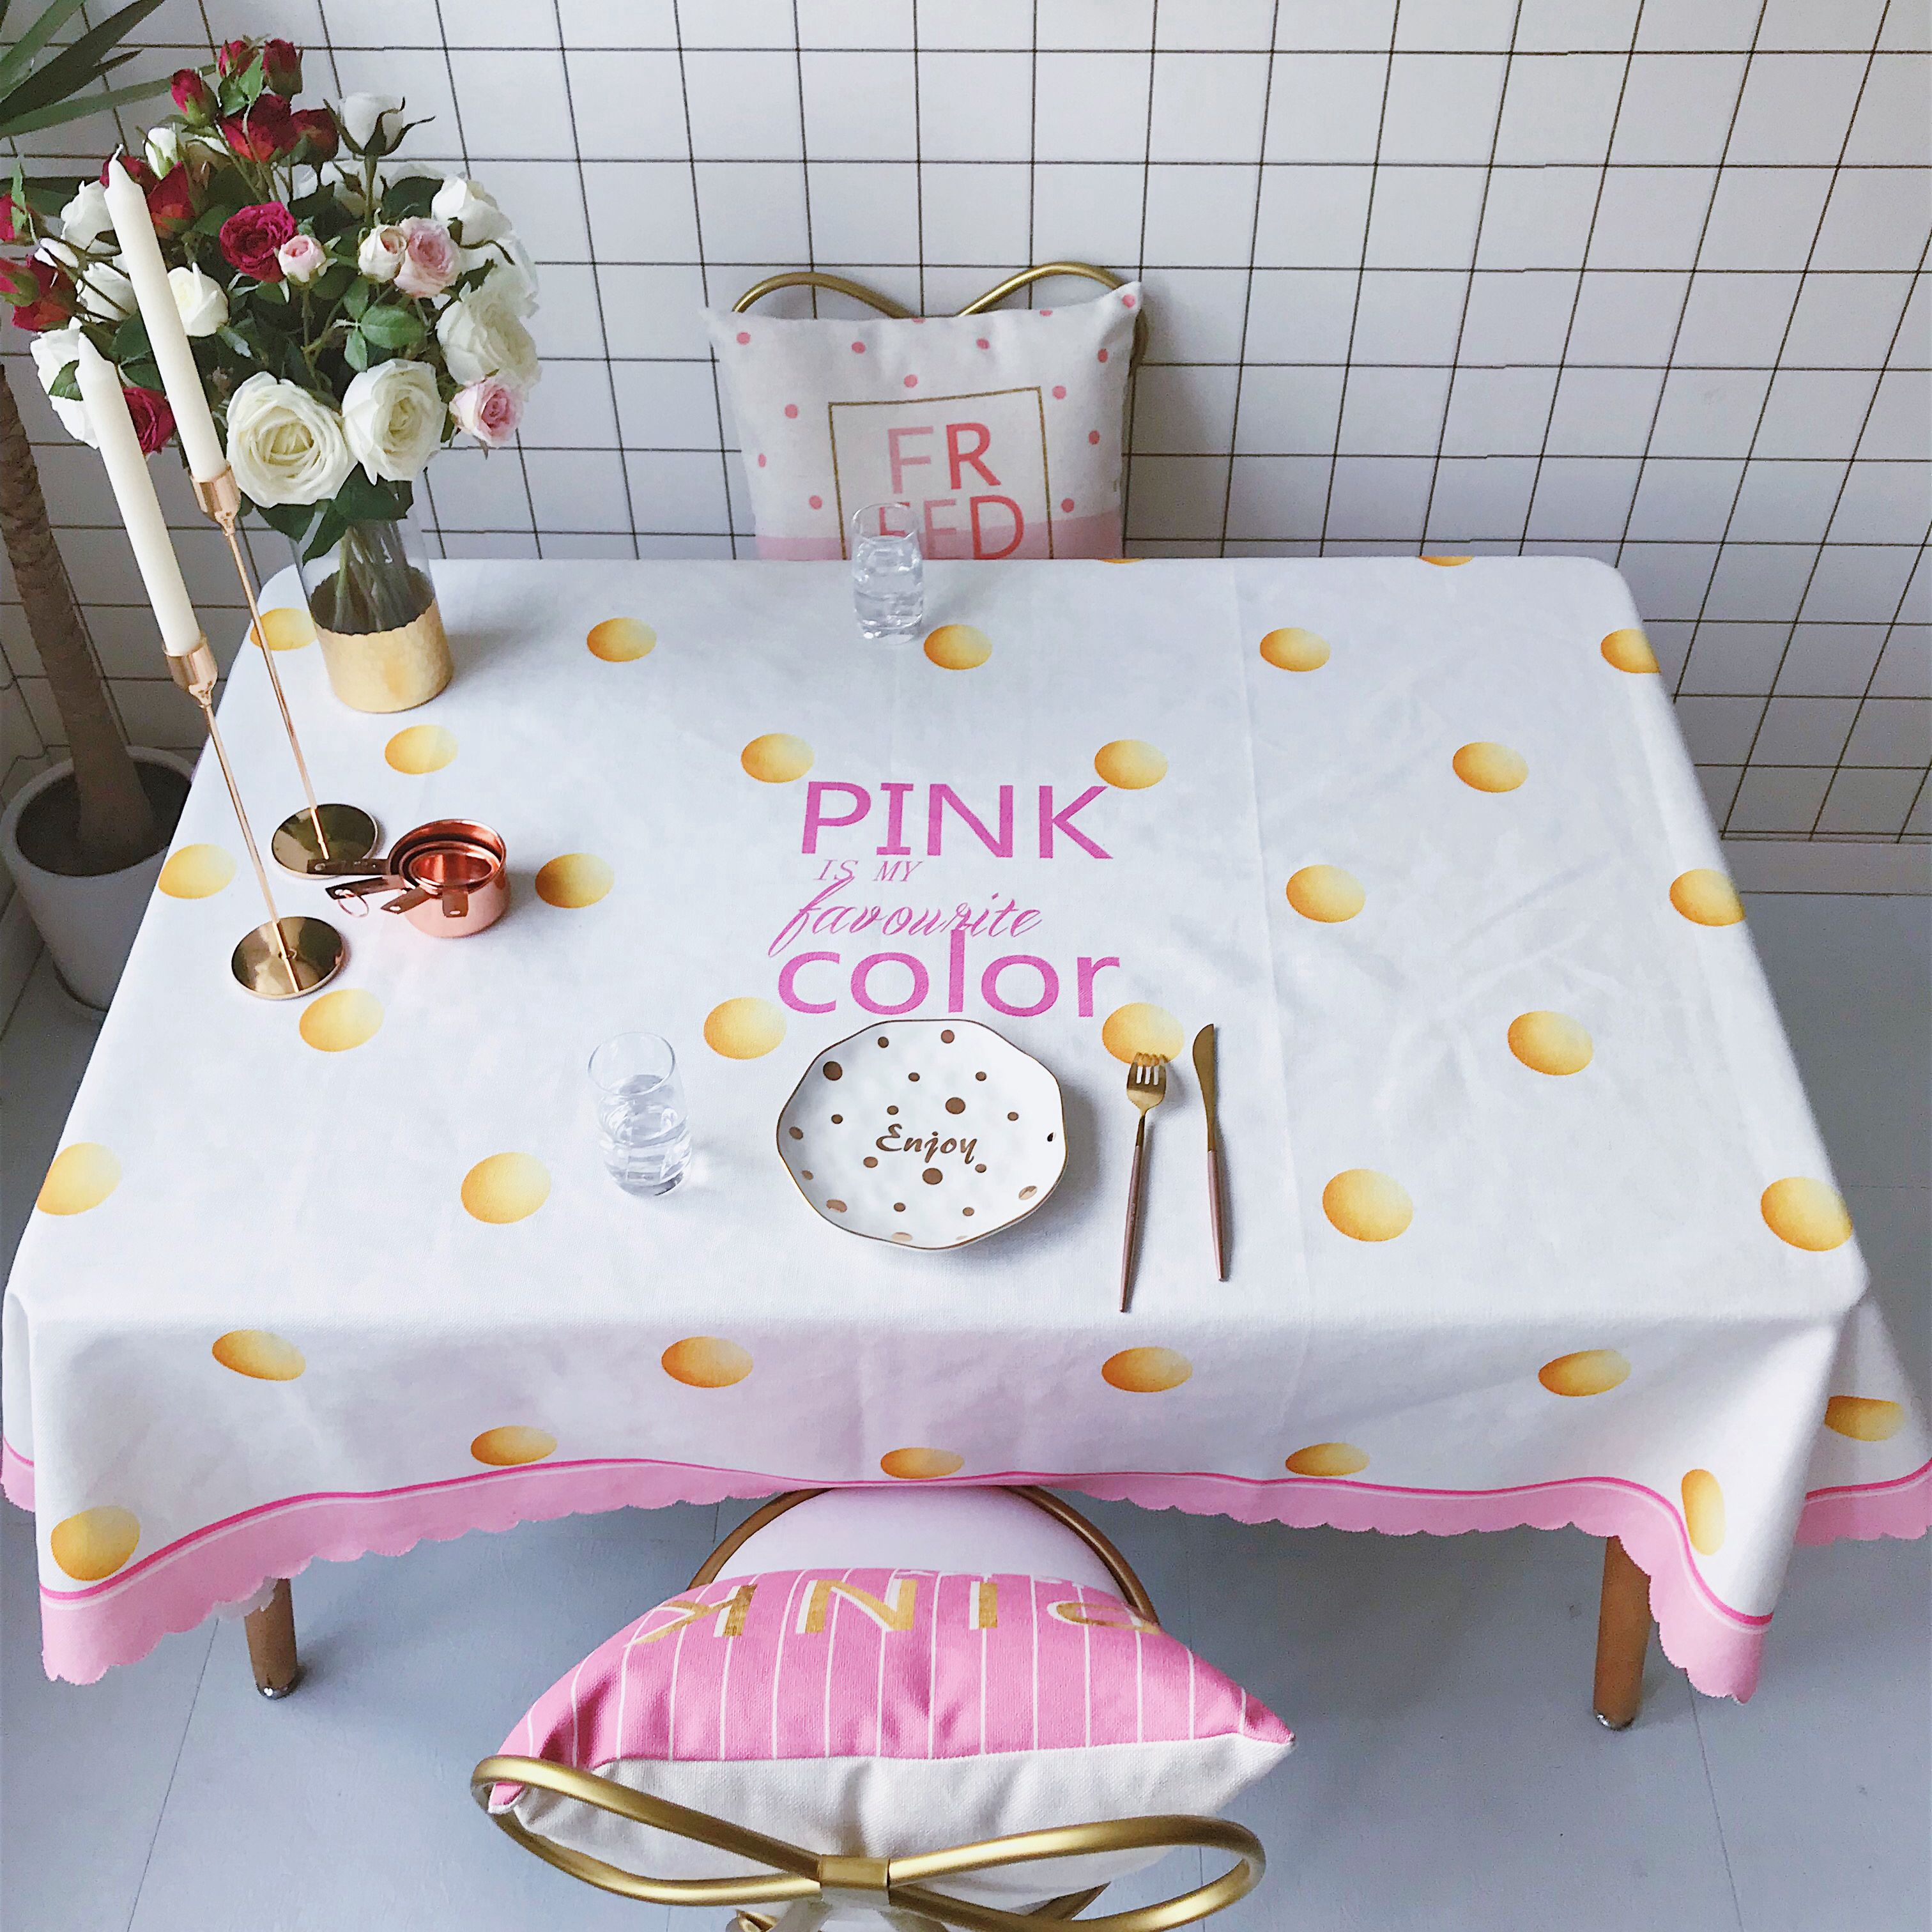 2018新款网红居家棉麻餐桌布 140*140cm pink